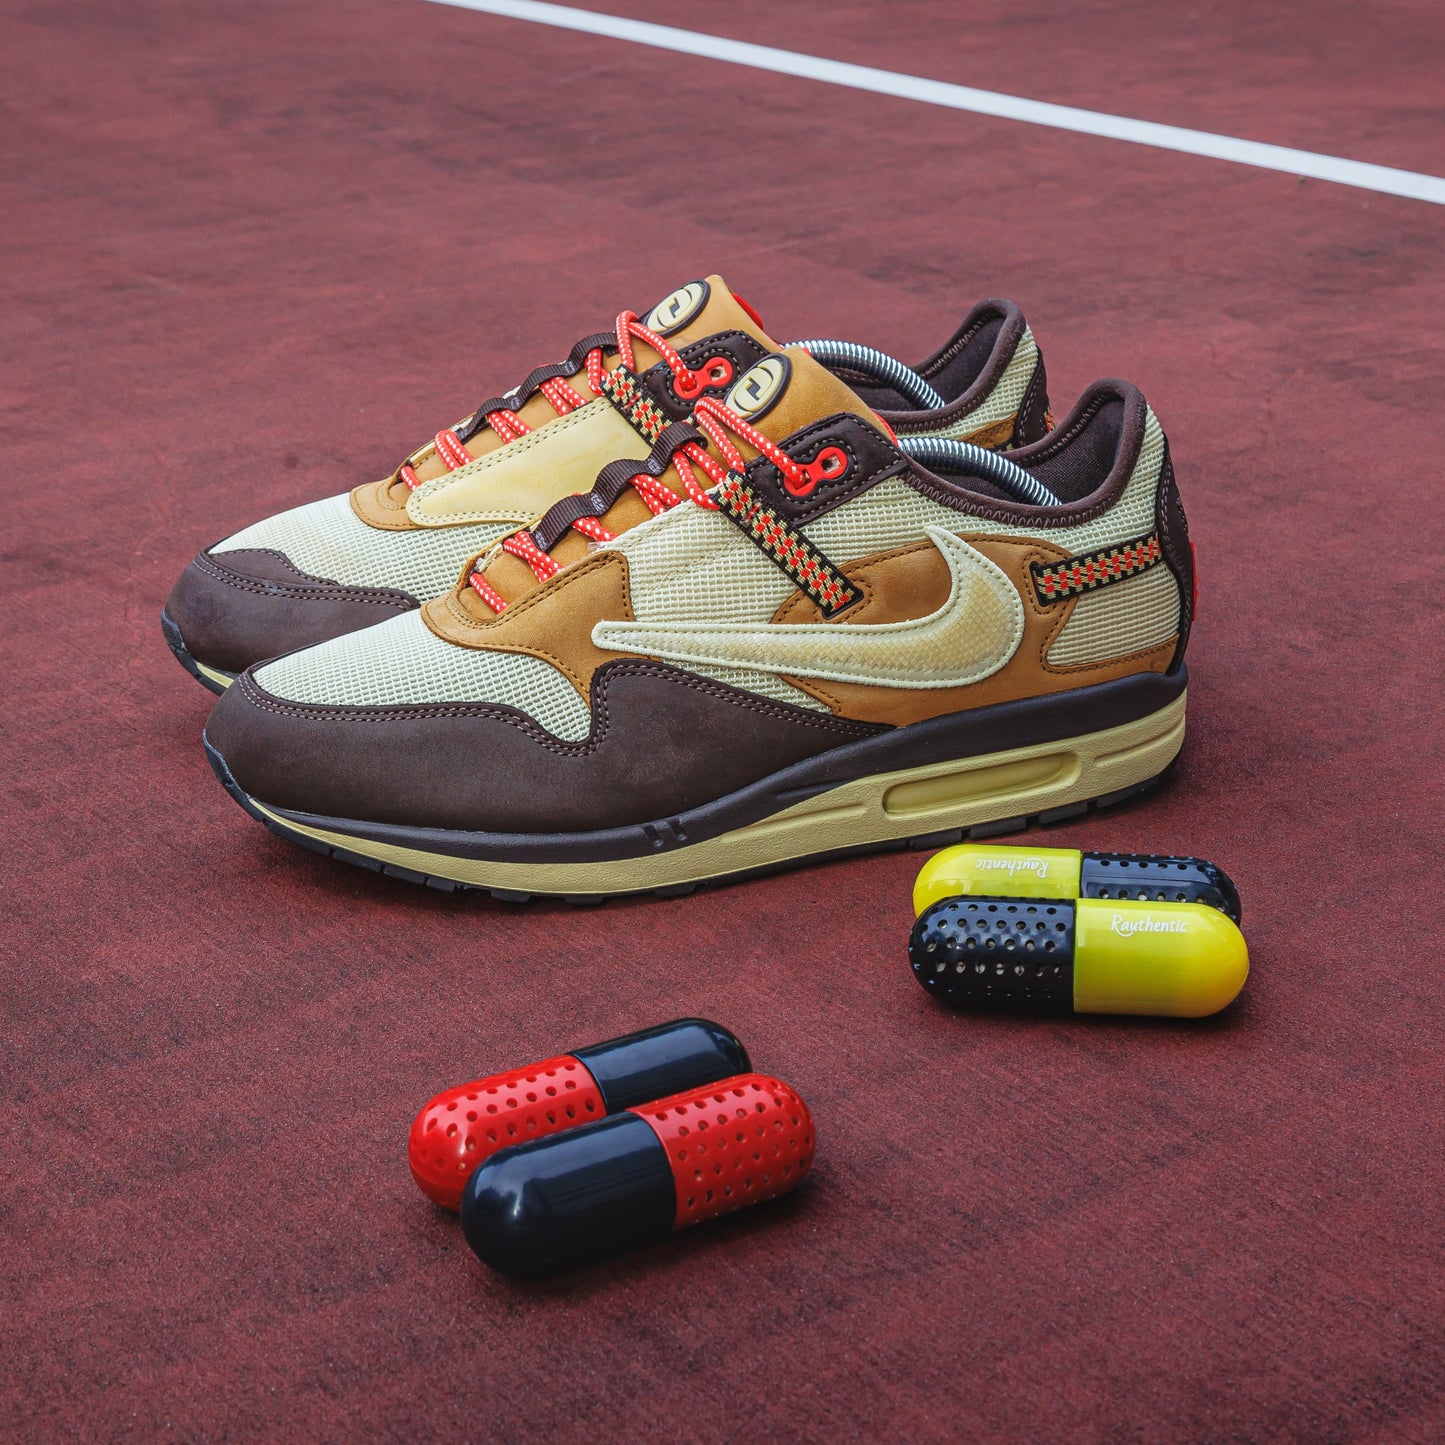 Anti-Bacteria Sneaker Deodorizing Pills / Moth Ball